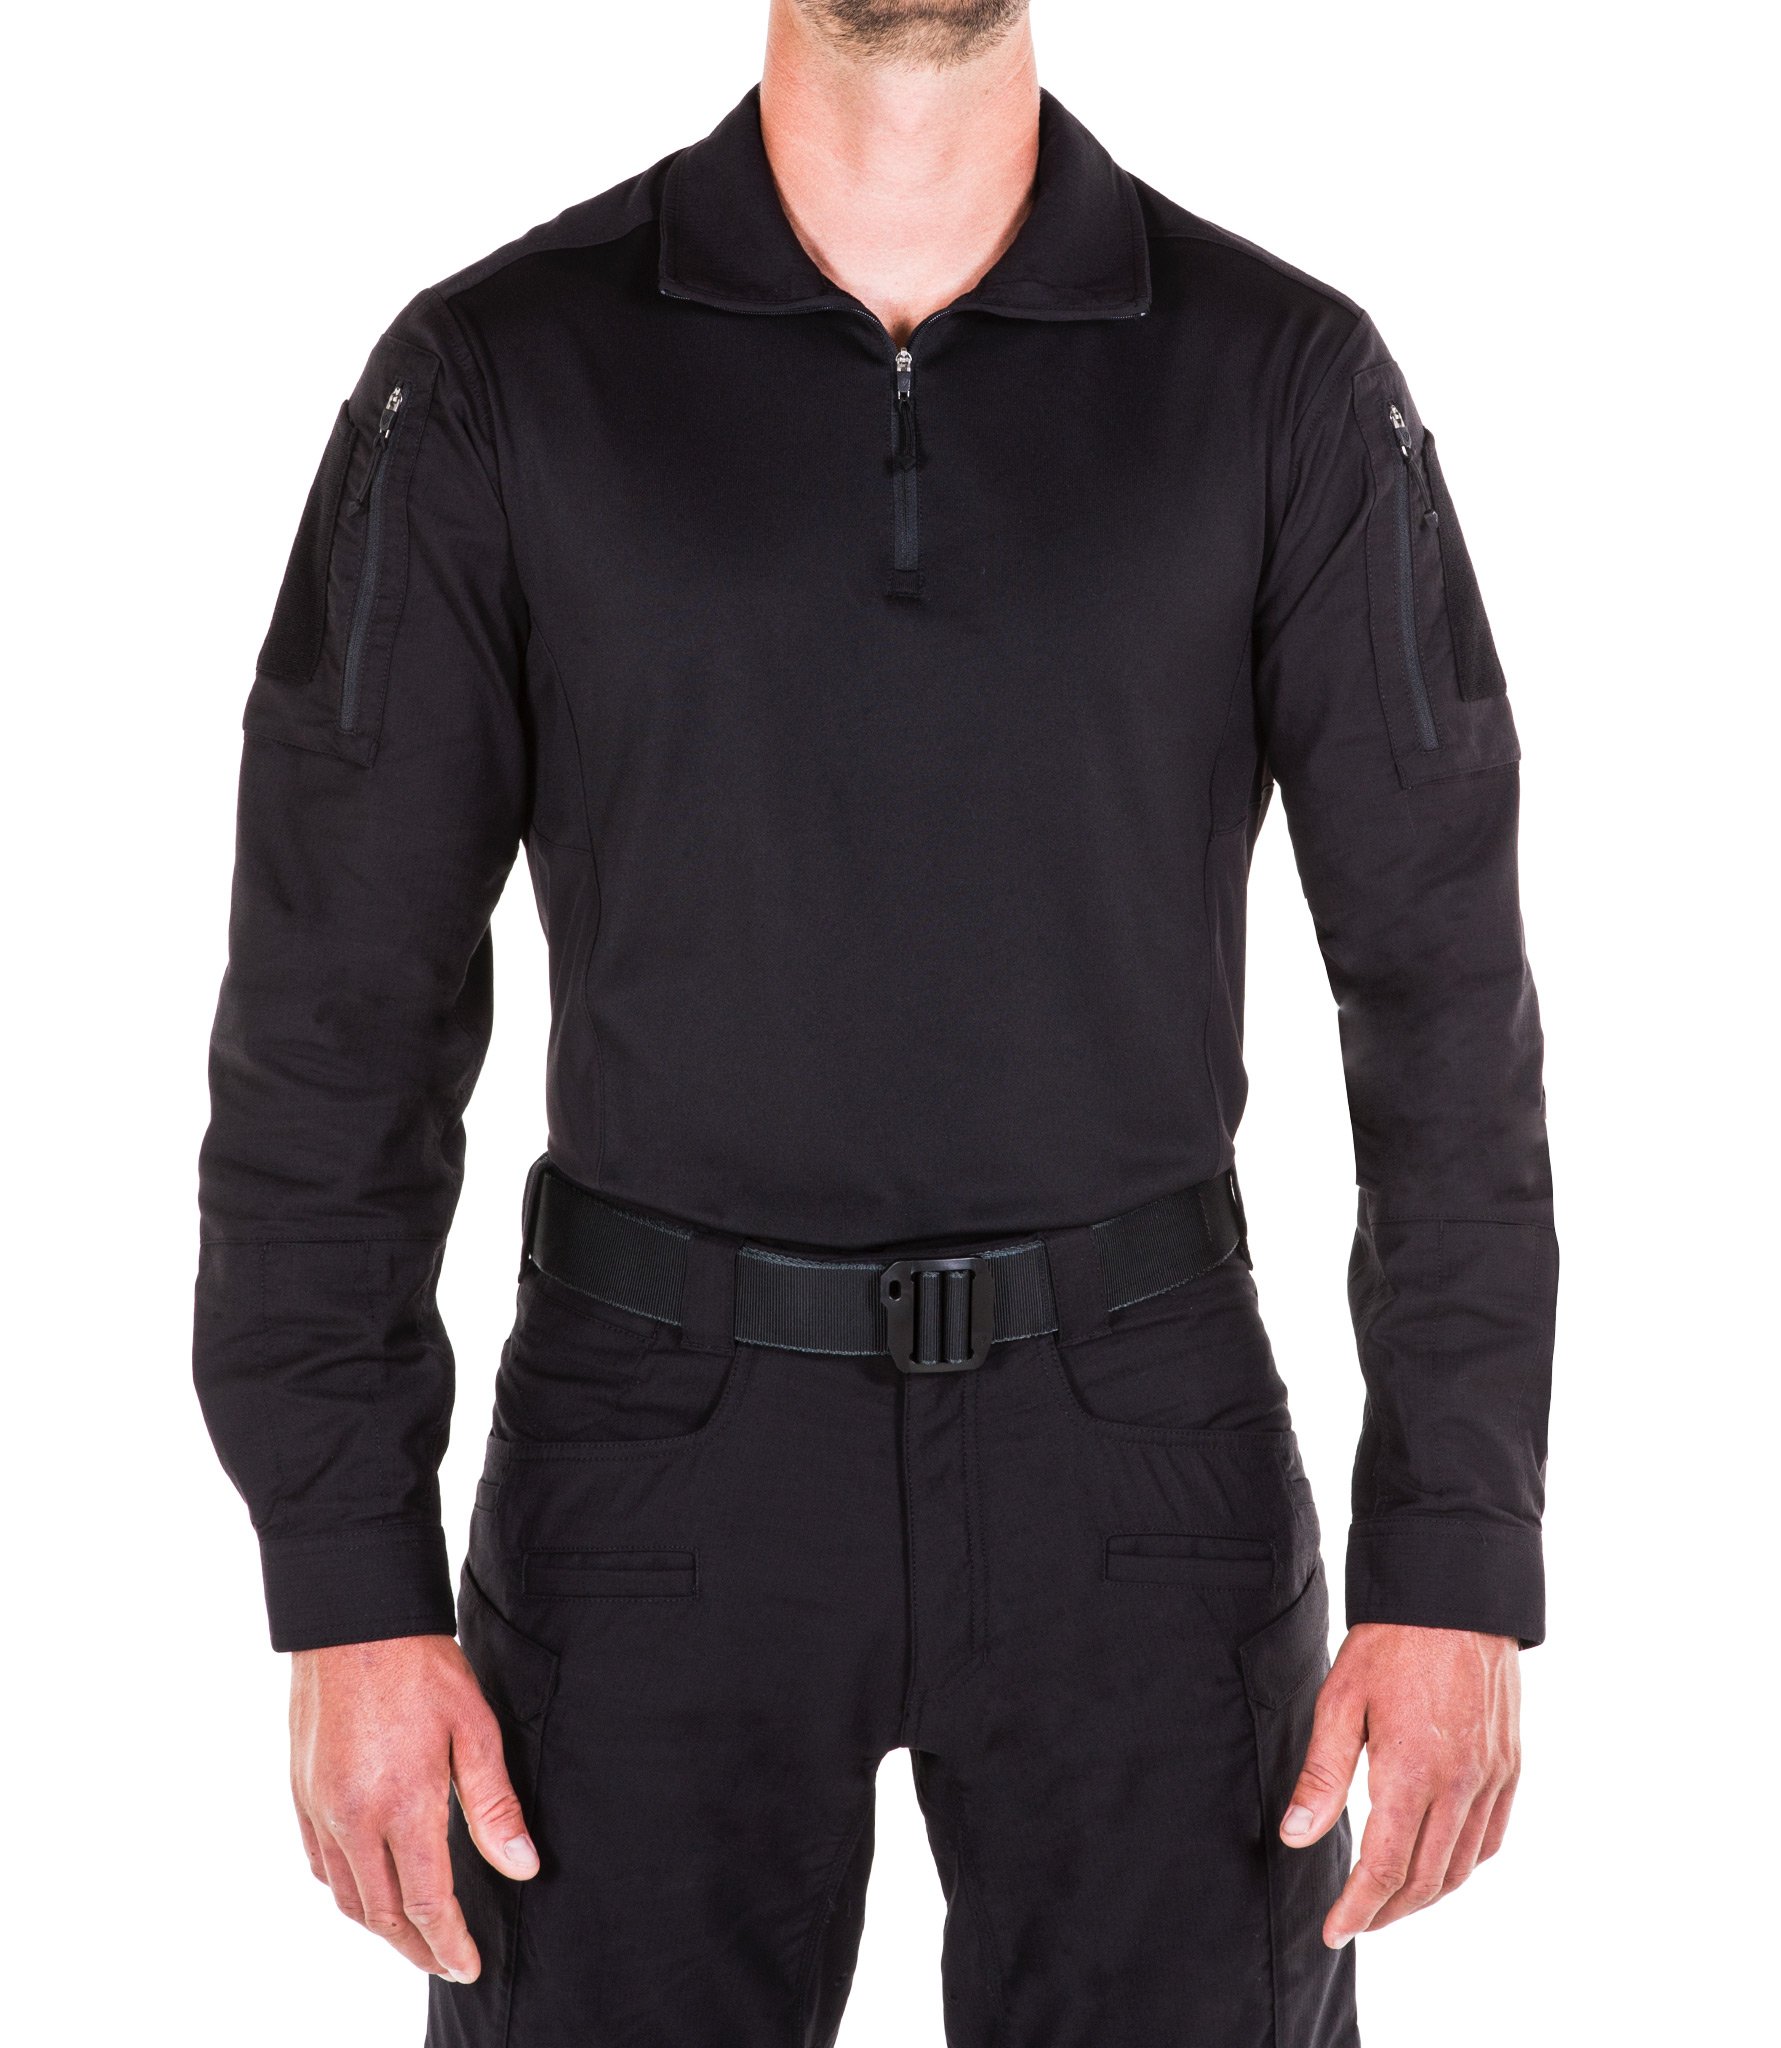 111004-Mens-Defender-Shirt-Black-FRONT_c8e3b9d4-2408-4a0b-8732-8adf8db2bbbf